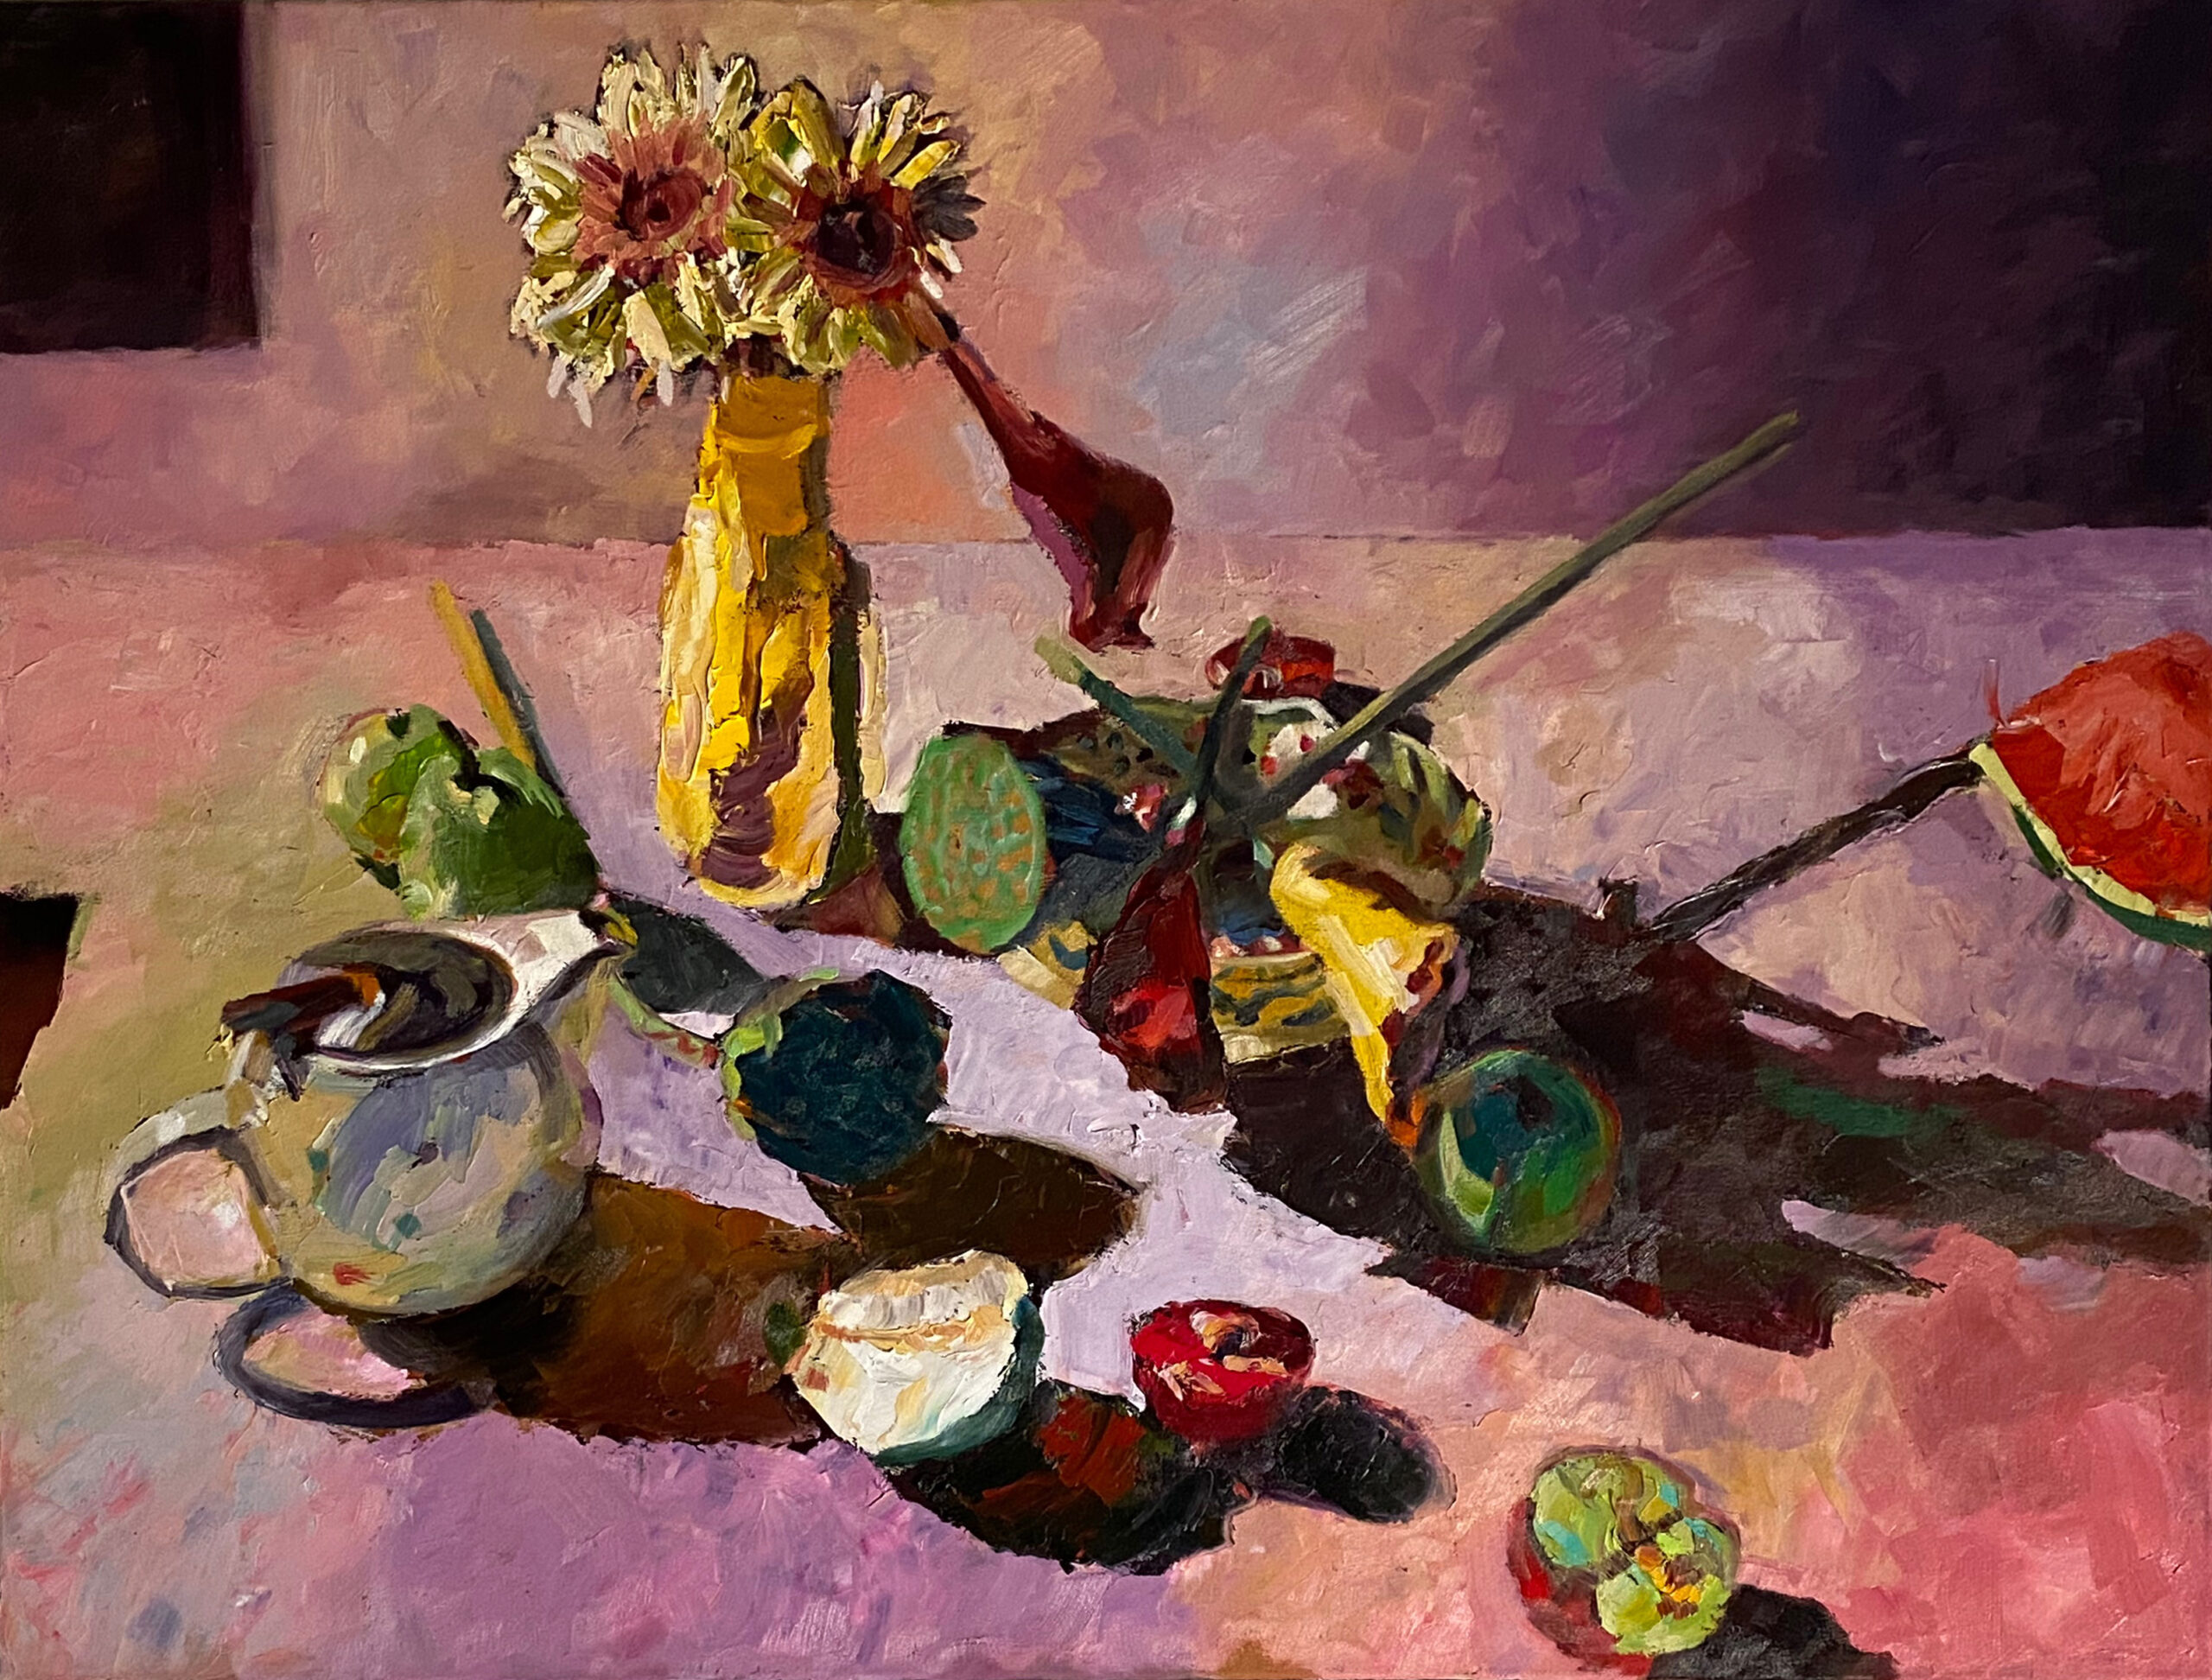 Rosemary Valadon 'Landscape 3 Teapot, Flowers, Fruit' oil on linen 76 x 101cm $12,000